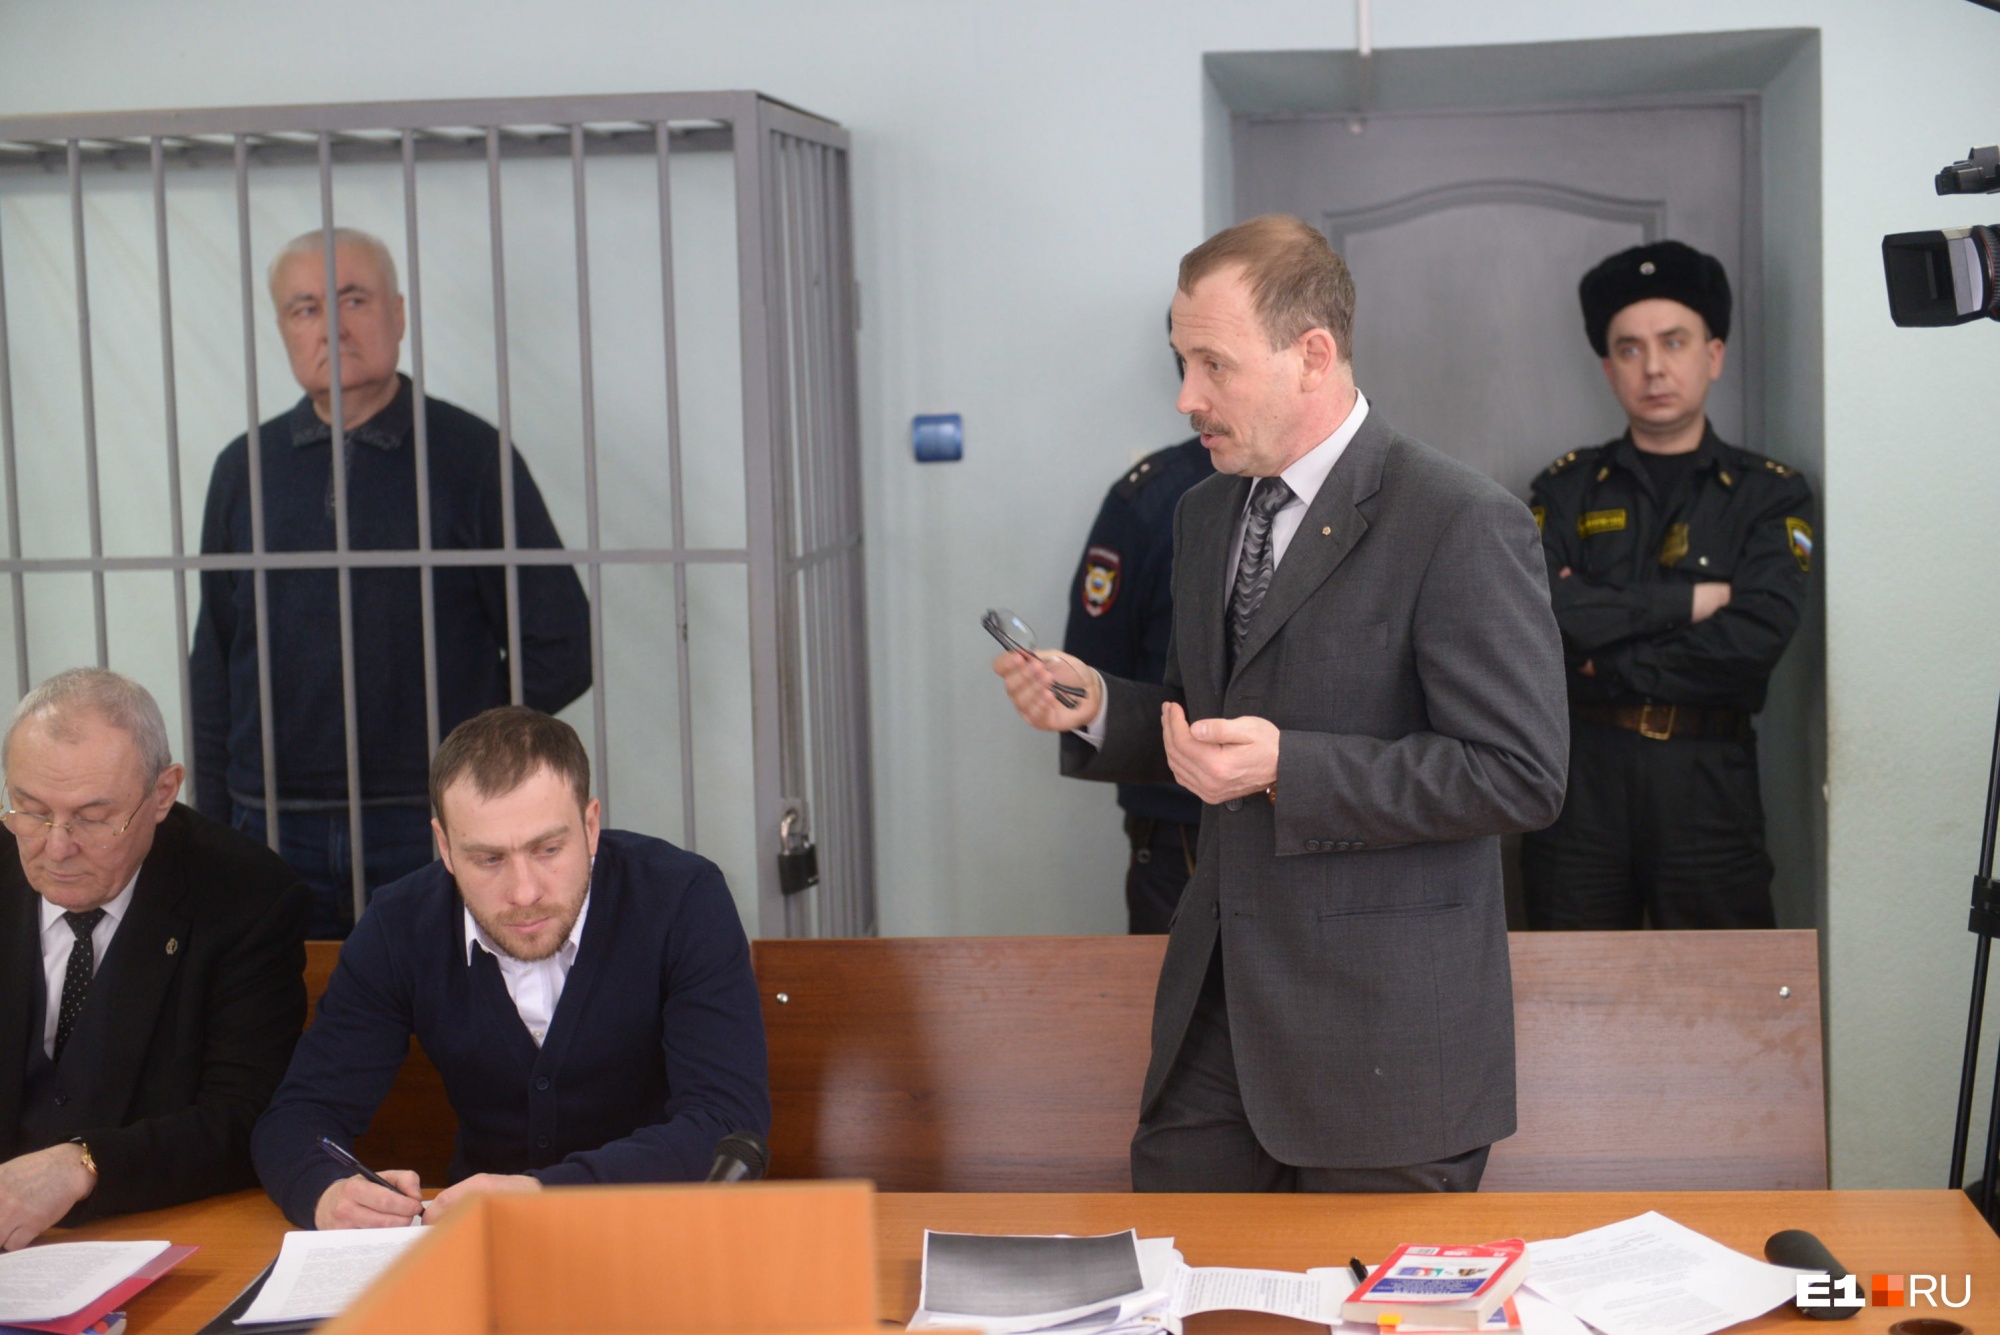 Адвокат Миронова Сергей Колосовский ходатайствует об отводе судьи